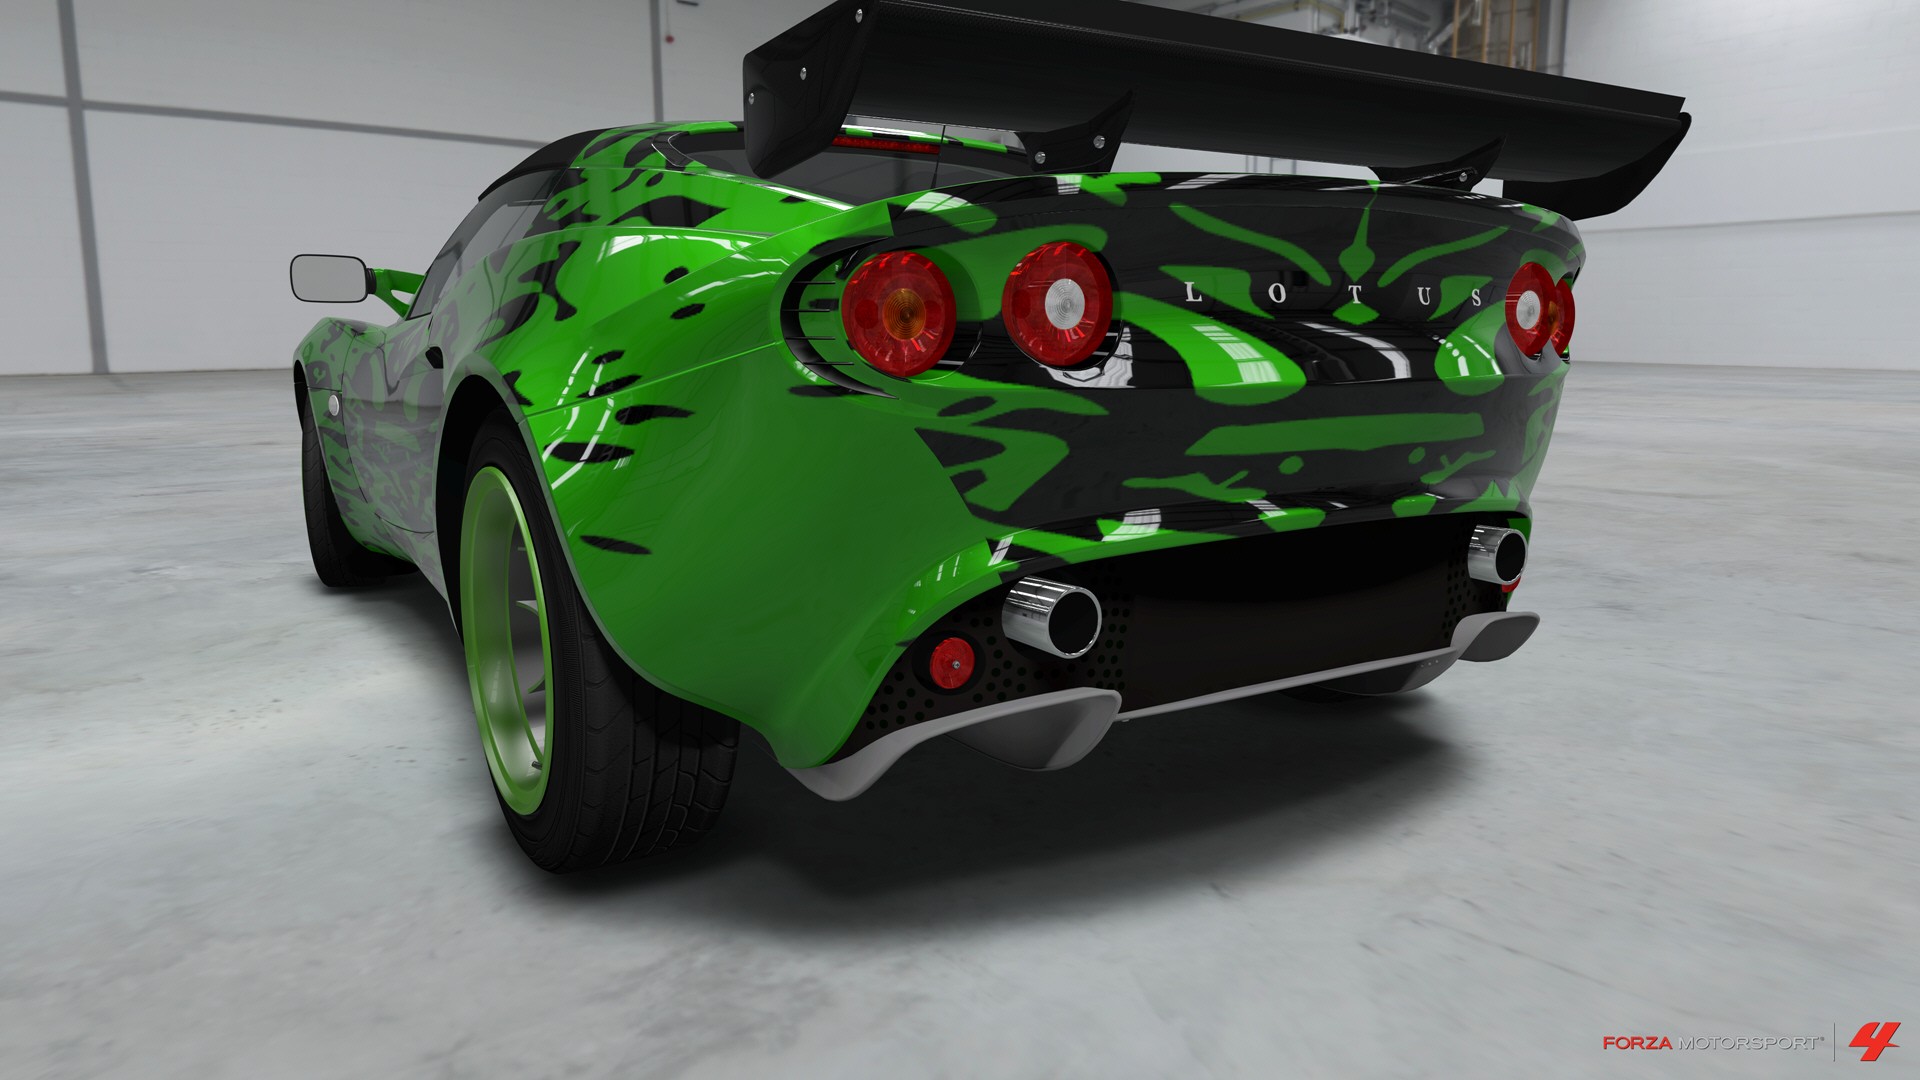 Descarga gratuita de fondo de pantalla para móvil de Forza Motorsport, Fuerza, Videojuego.